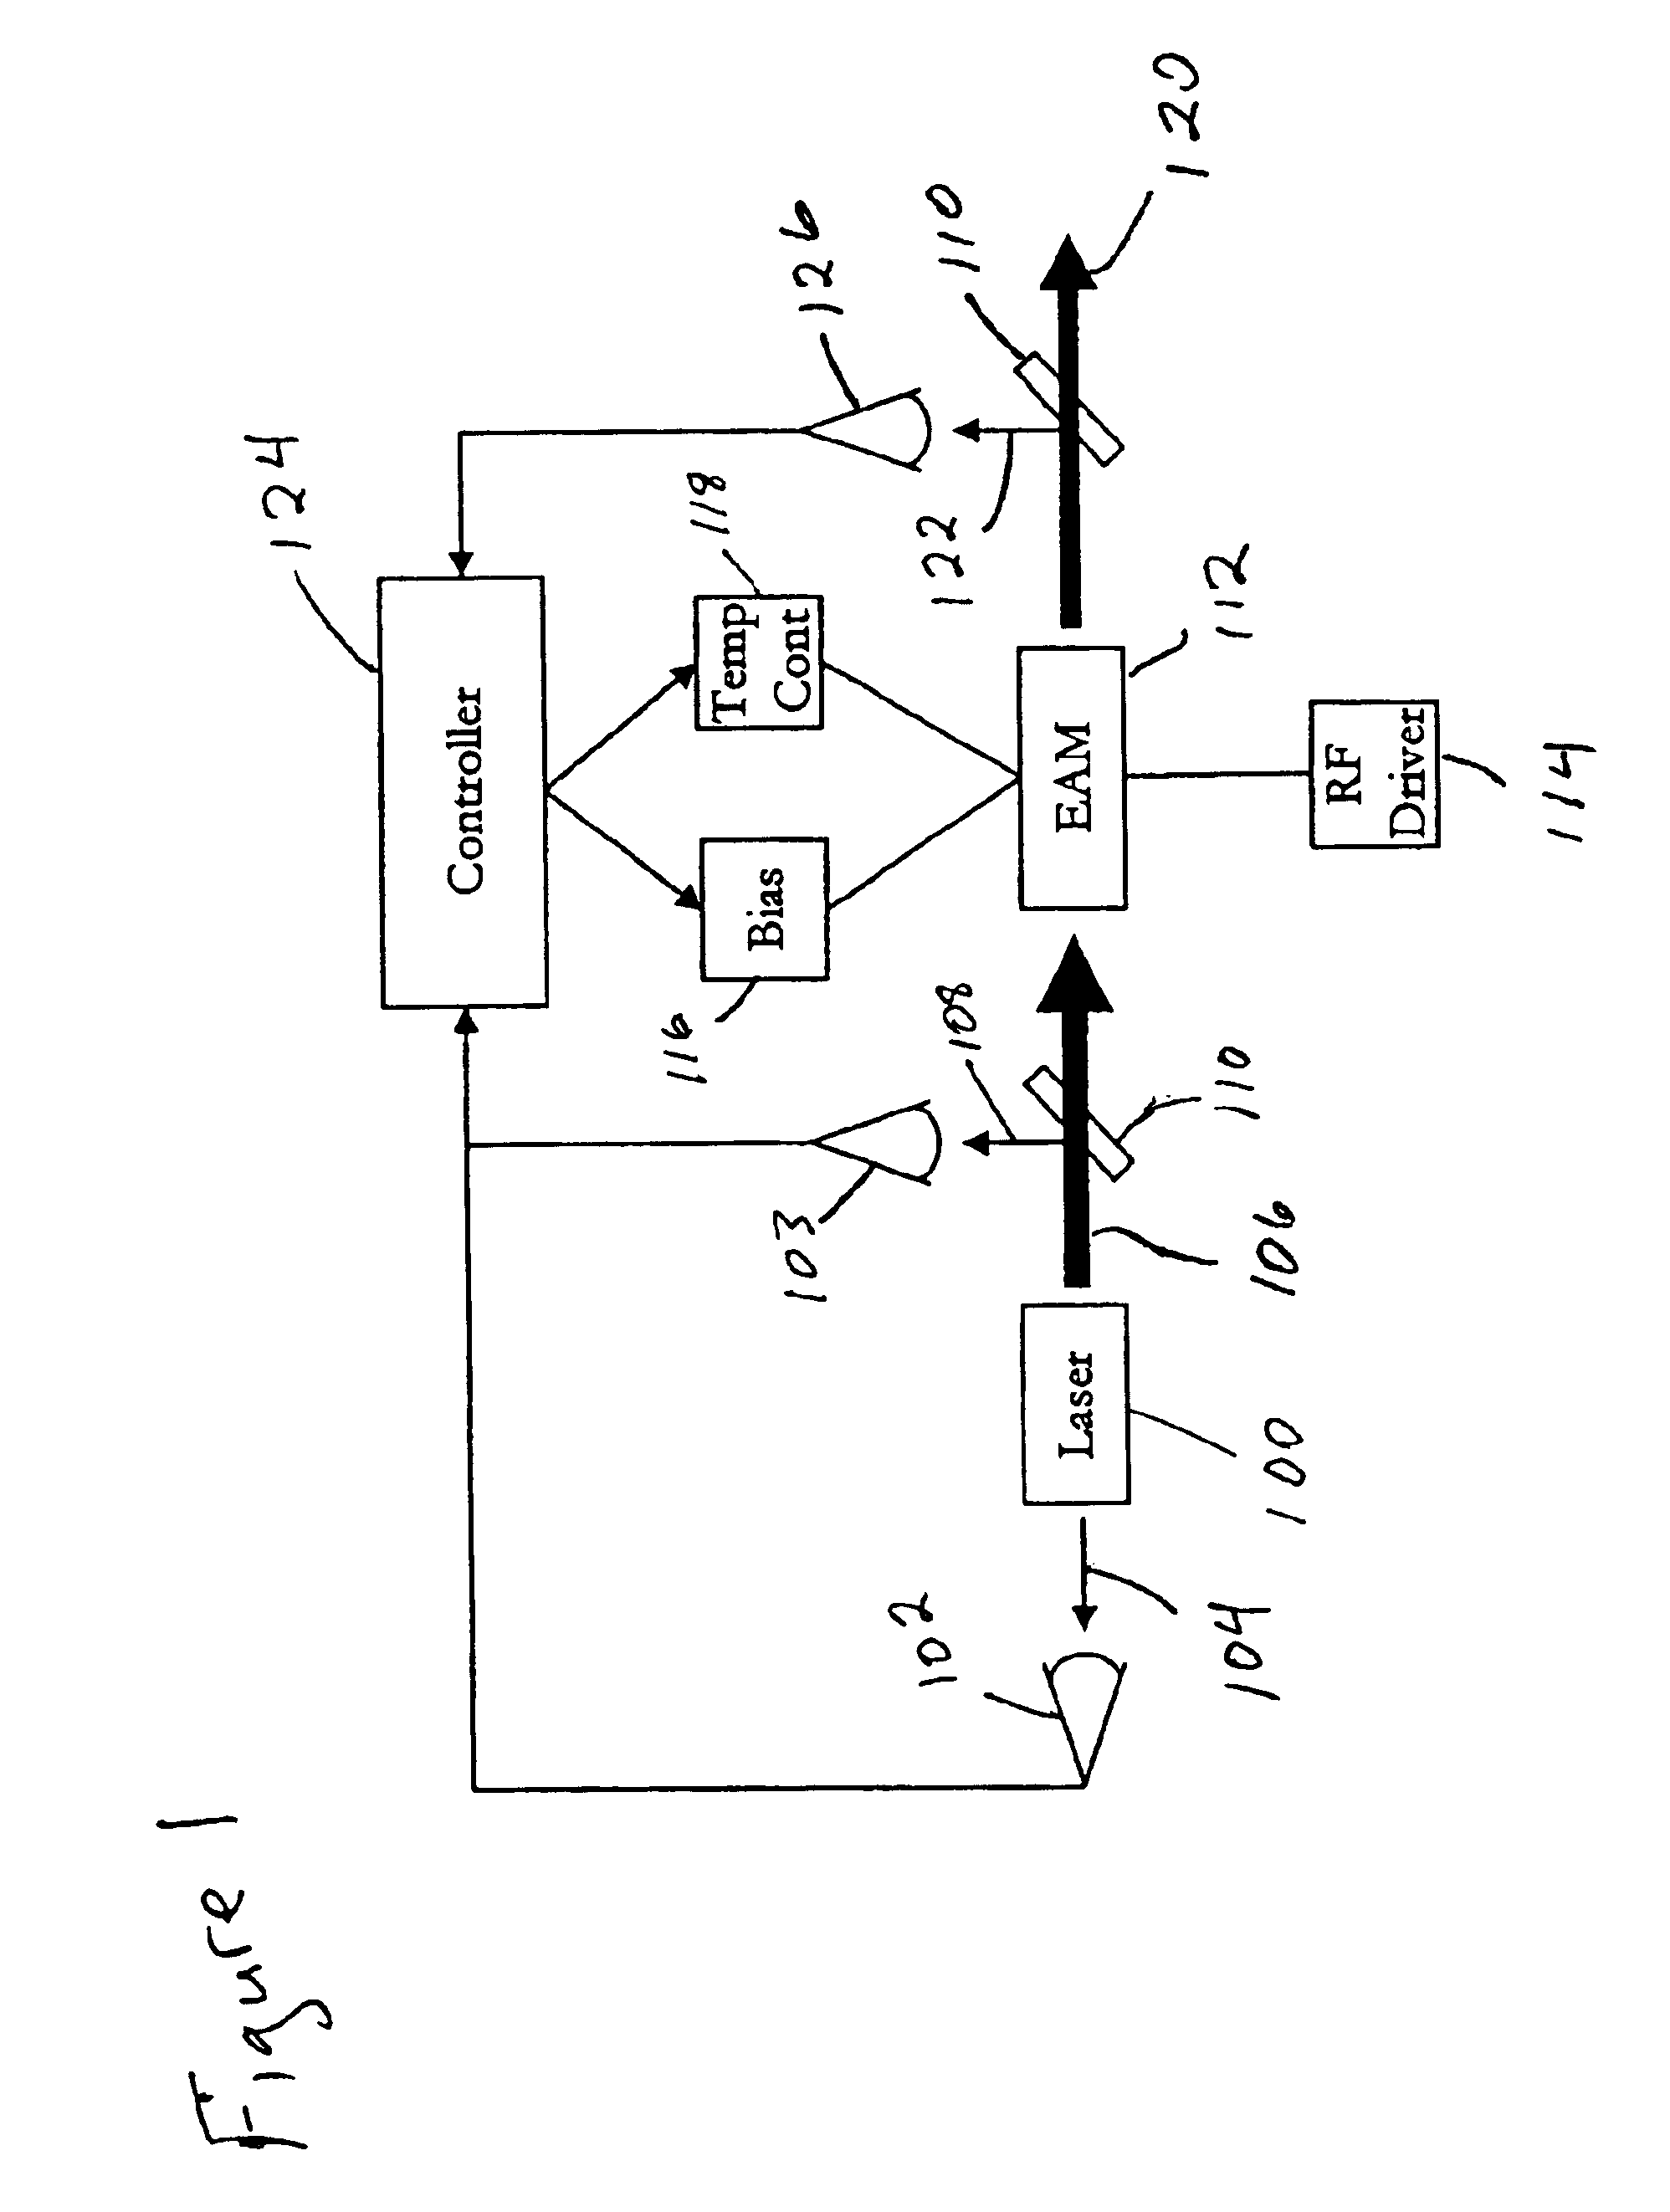 Method of tuning wavelength tunable electro-absorption modulators